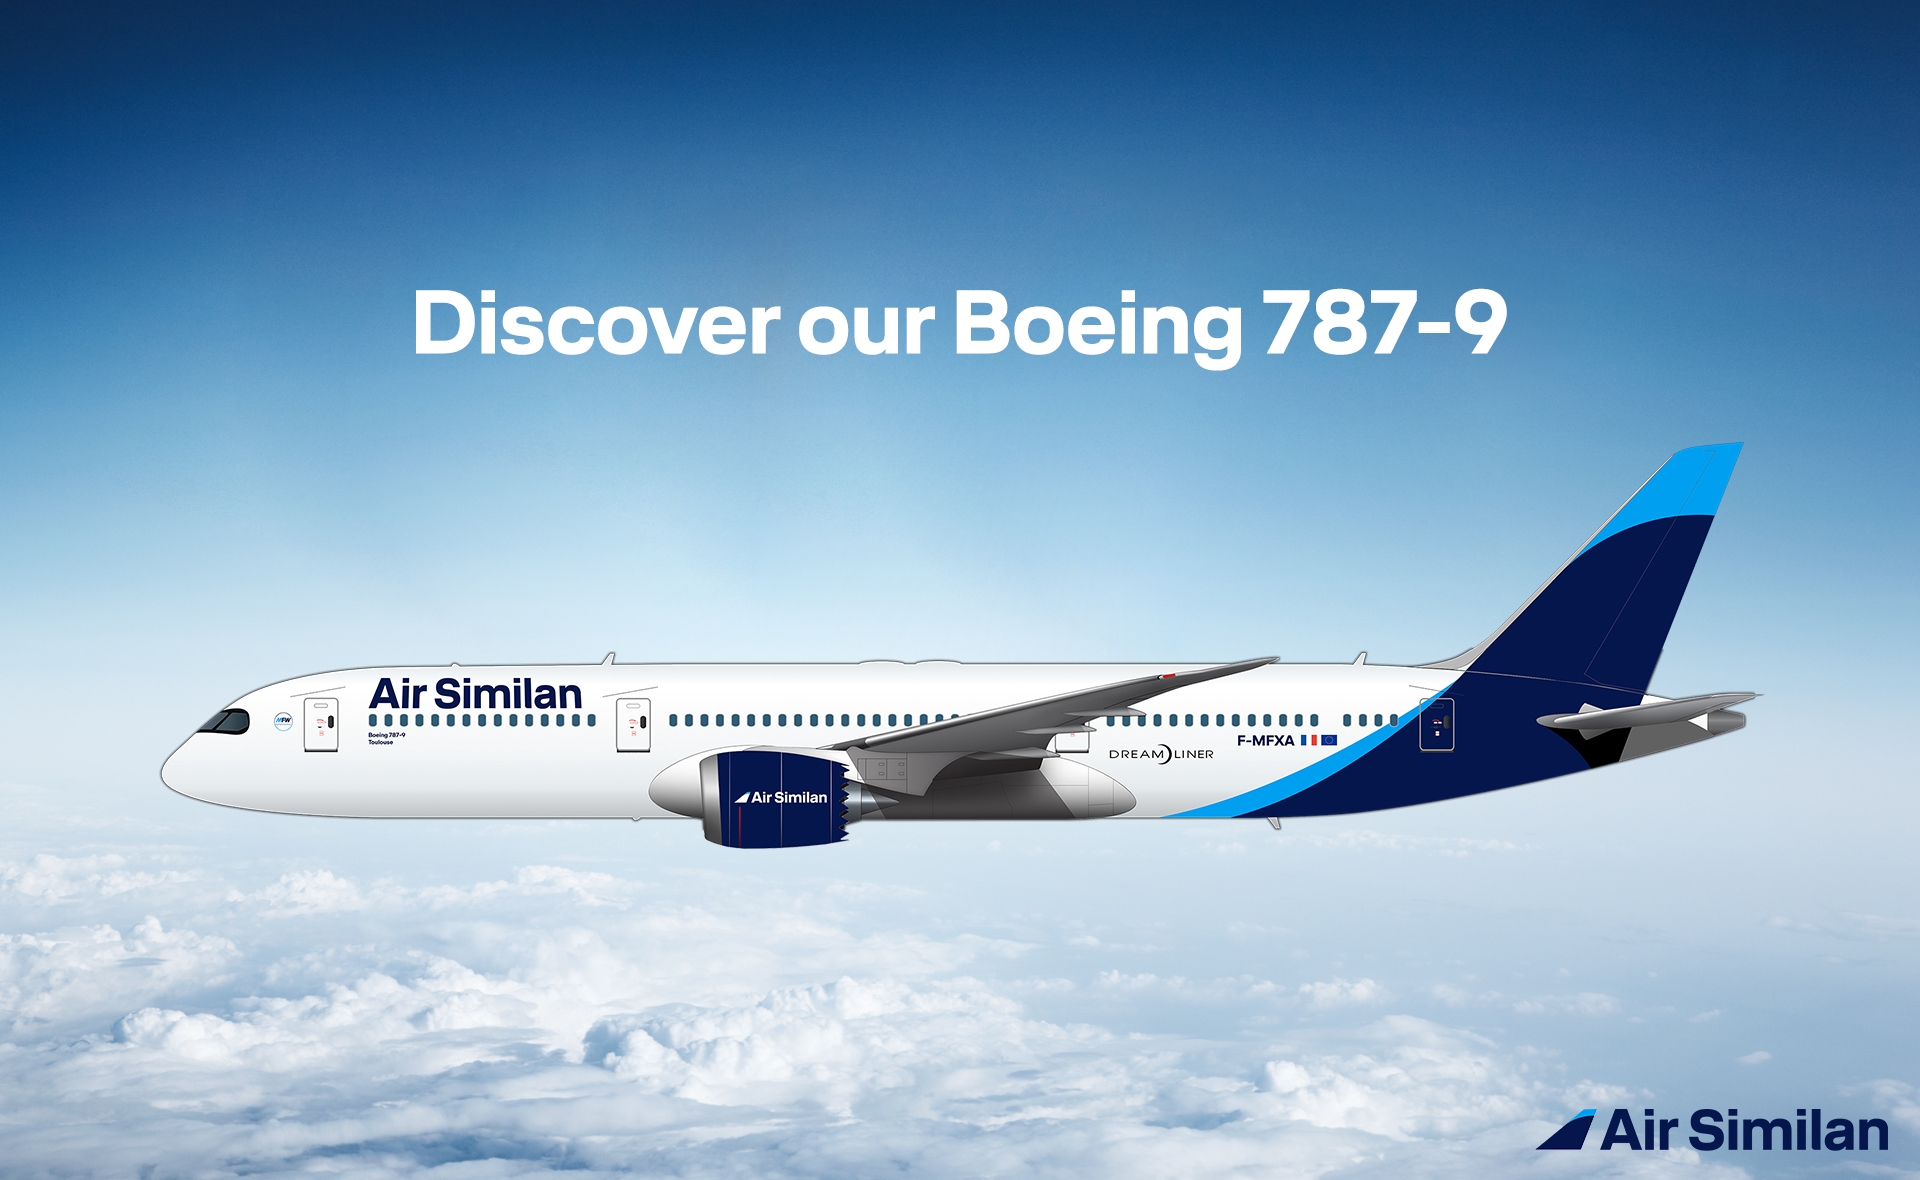 Air Similan orders 4 Boeing 787-9 Dreamliner